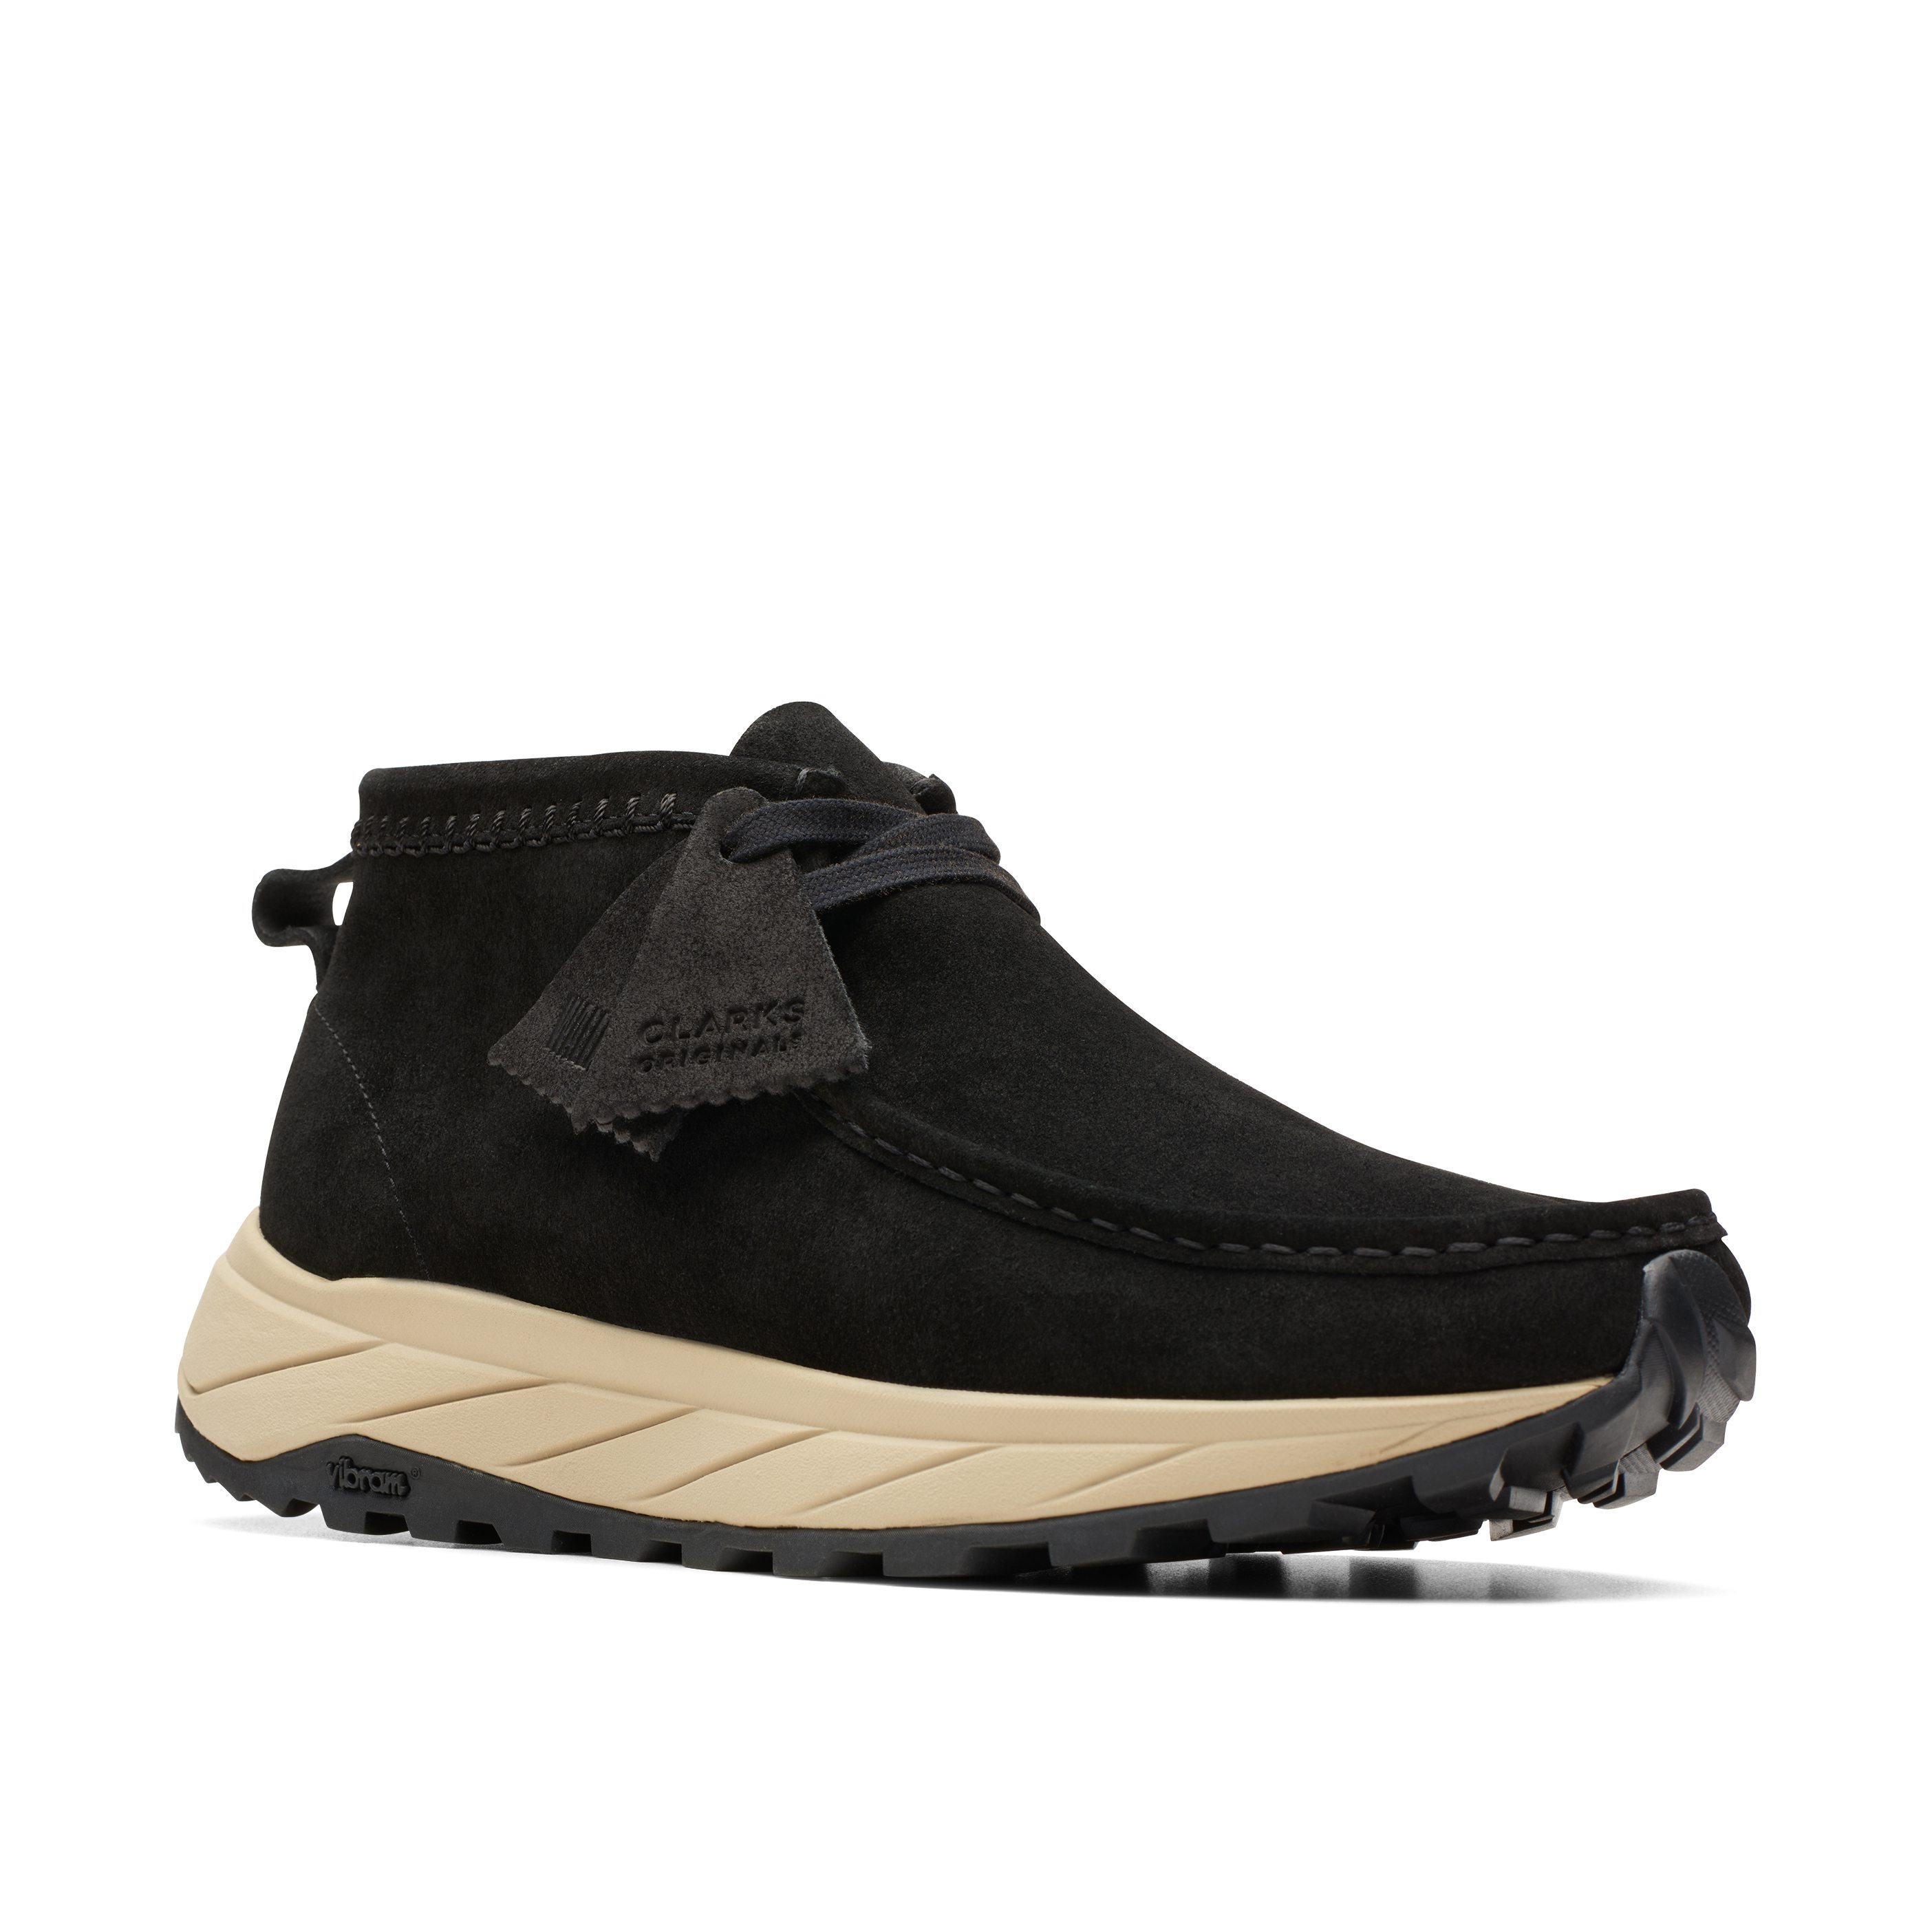 Clarks Wallabee Eden Sneaker Boot - Black | Trail Sneakers | Huckberry